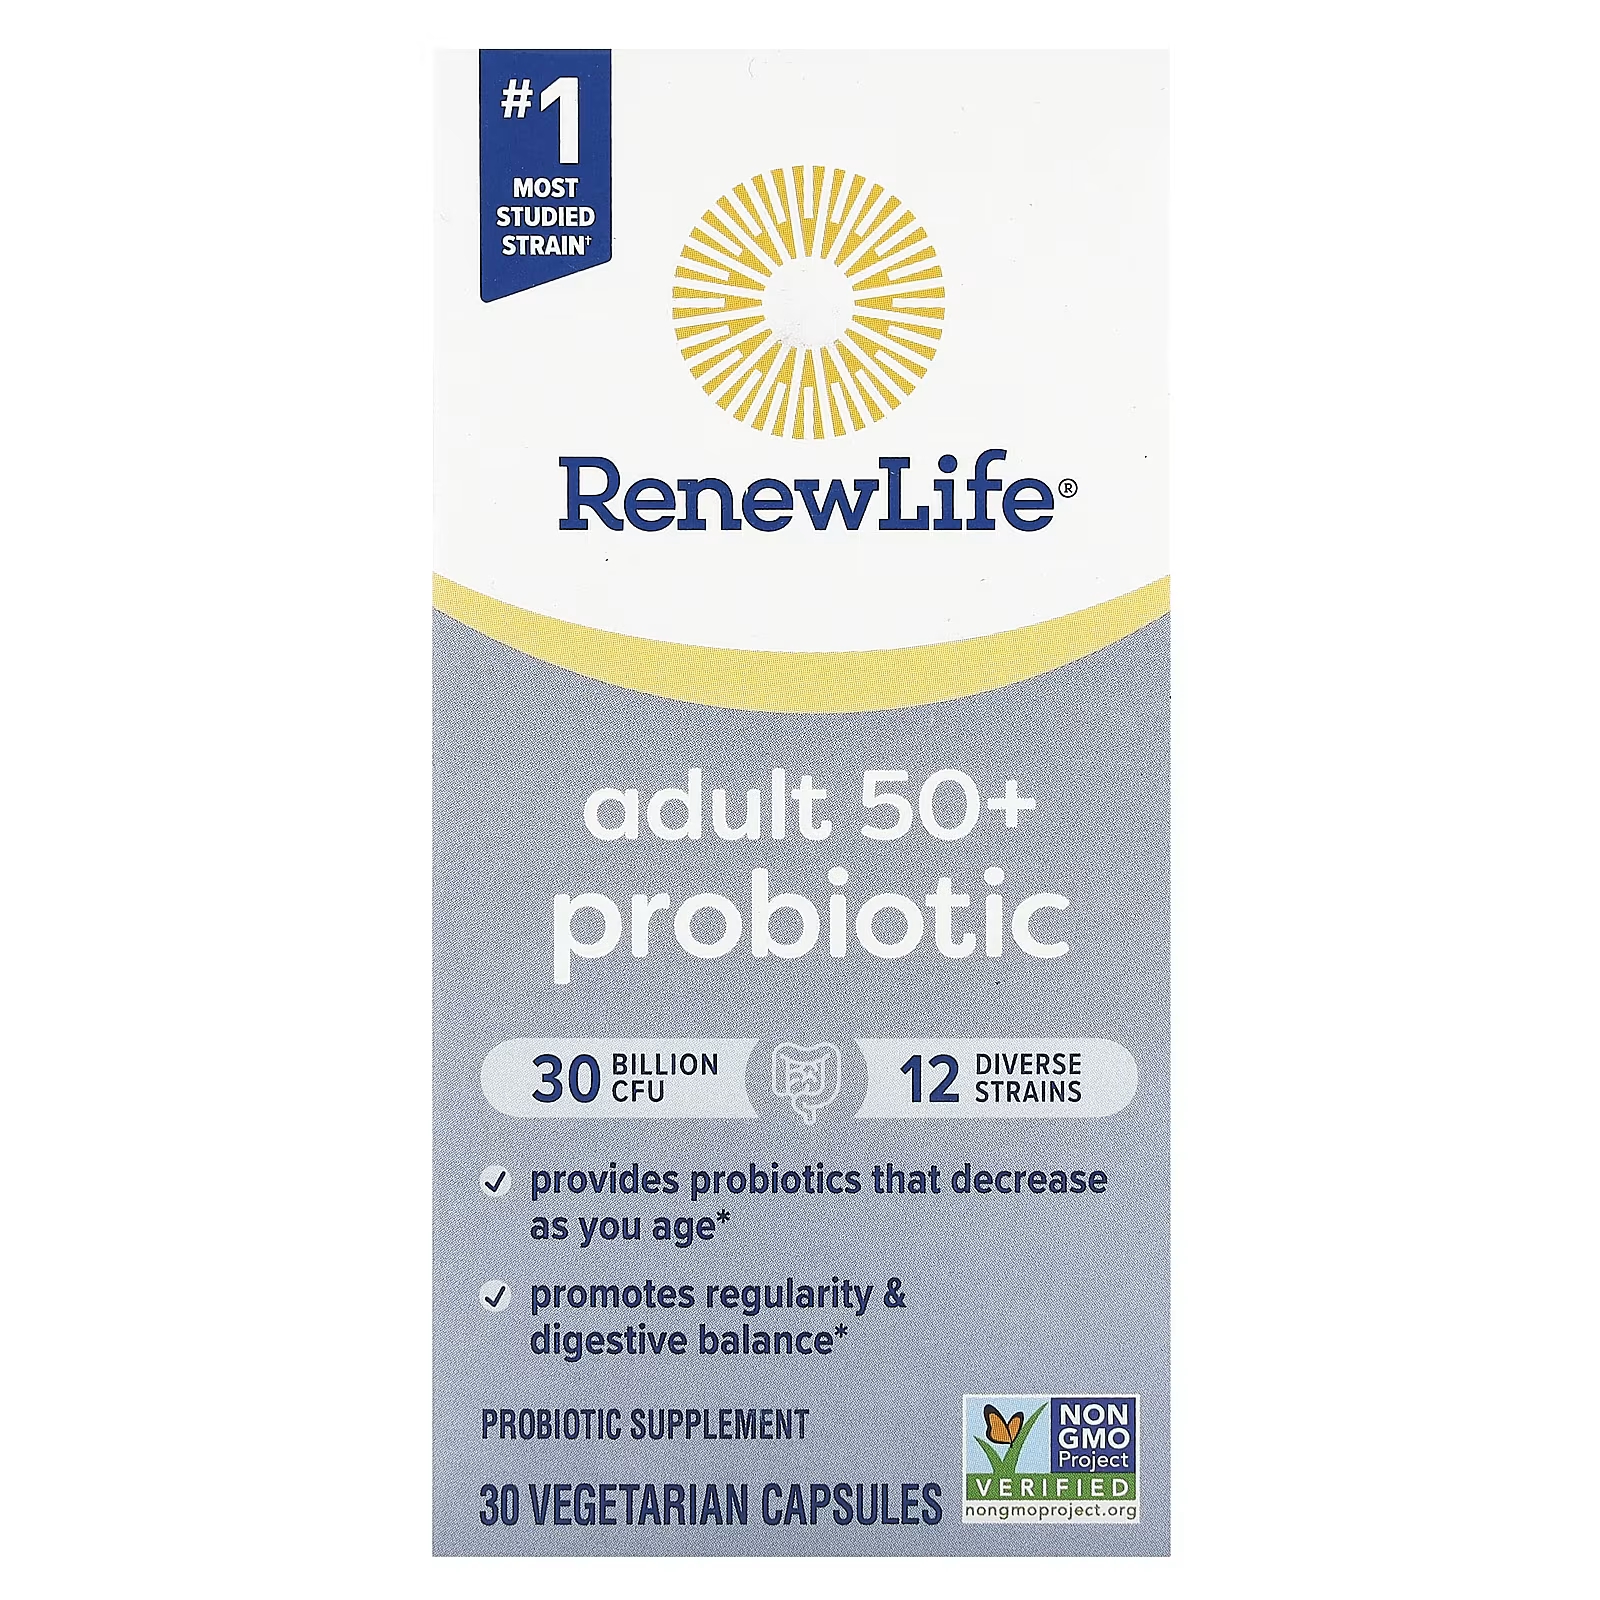 Пробиотик Renew Life для взрослых старше 50 лет, 30 миллиардов КОЕ, 30 вегетарианских капсул пробиотик colon care 80 миллиардов кое 30 вегетарианских капсул renew life